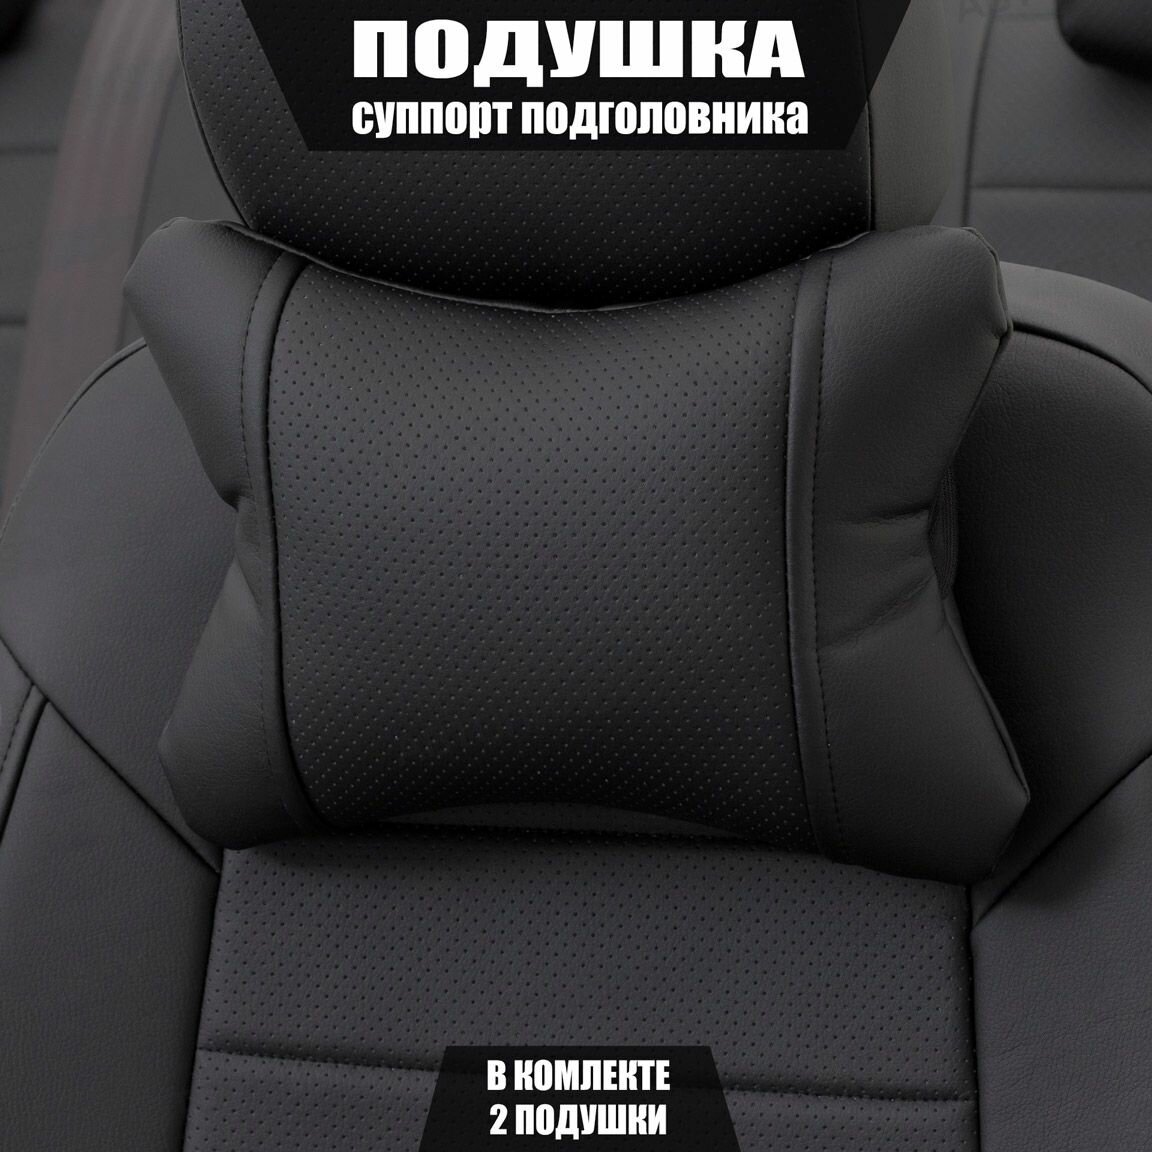 Подушки под шею (суппорт подголовника) для Сузуки Джимни (2005 - 2012) внедорожник открытый / Suzuki Jimny Экокожа 2 подушки Черный